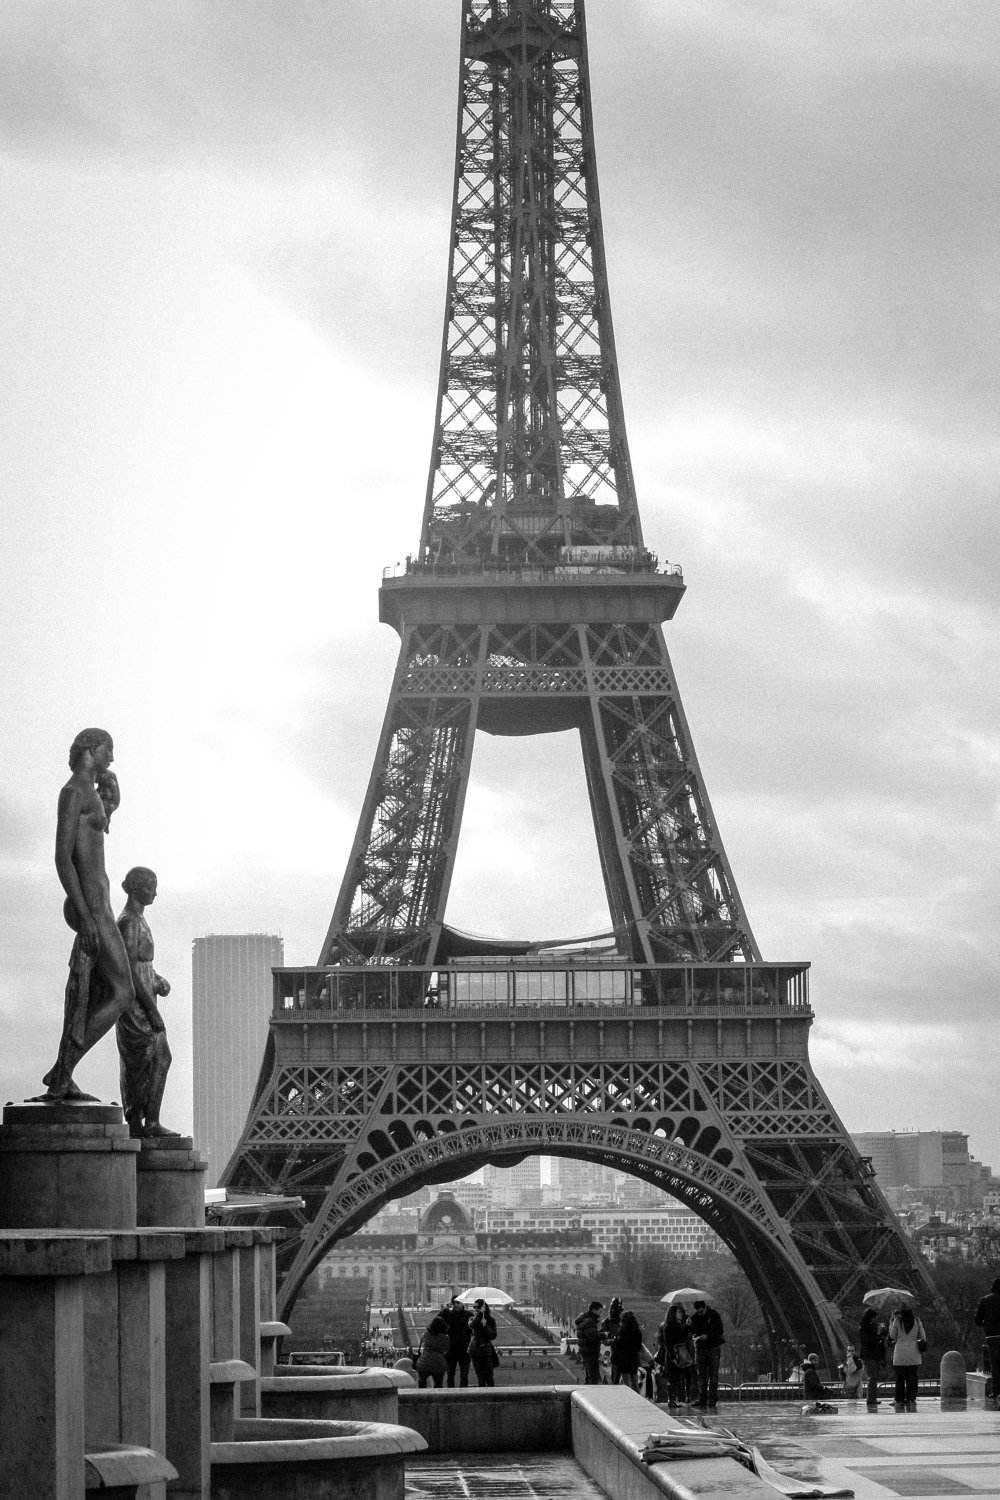 paris tapete schwarz und weiß,turm,monument,die architektur,schwarz und weiß,monochrome fotografie